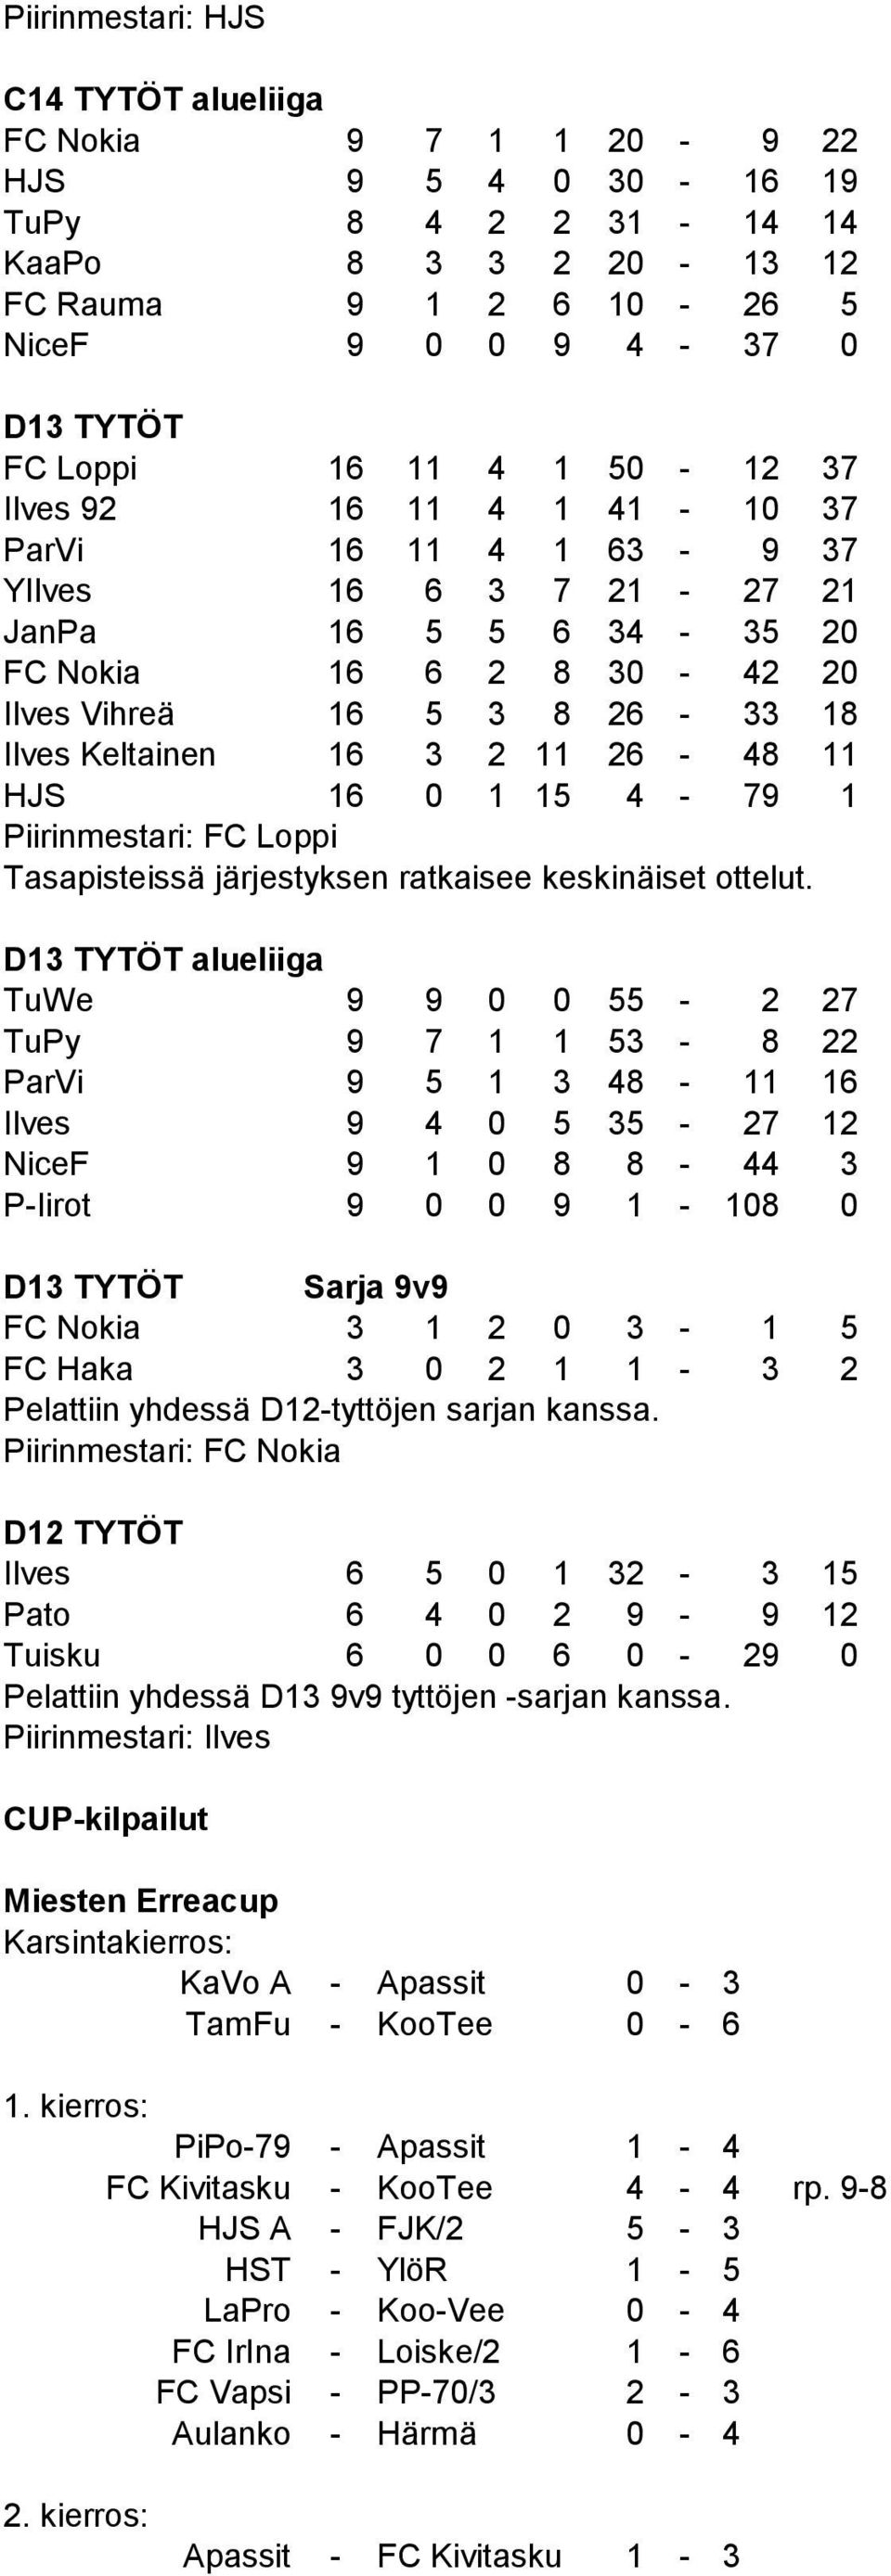 11 26-48 11 HJS 16 0 1 15 4-79 1 Piirinmestari: FC Loppi Tasapisteissä järjestyksen ratkaisee keskinäiset ottelut.